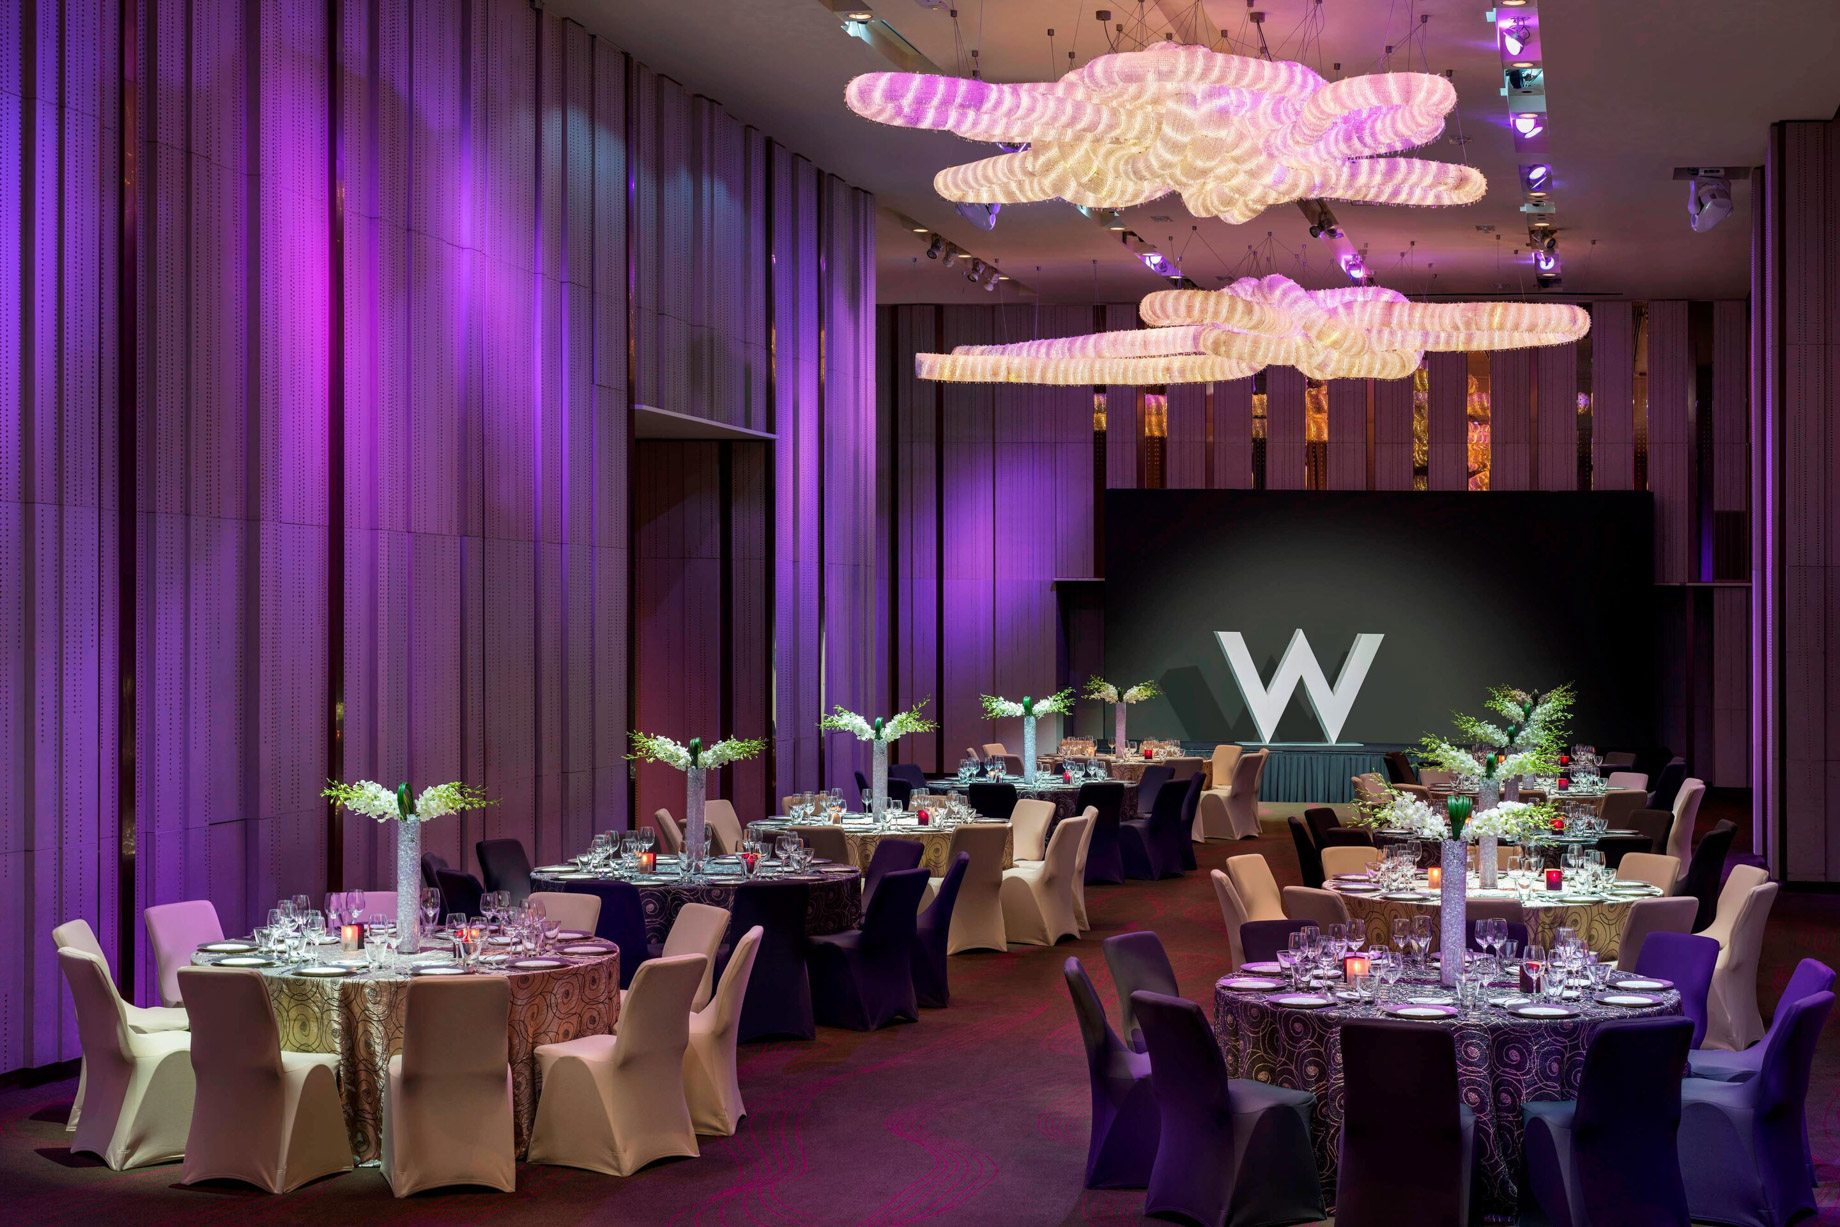 W Hong Kong Hotel – Hong Kong – Great Room Wedding Reception